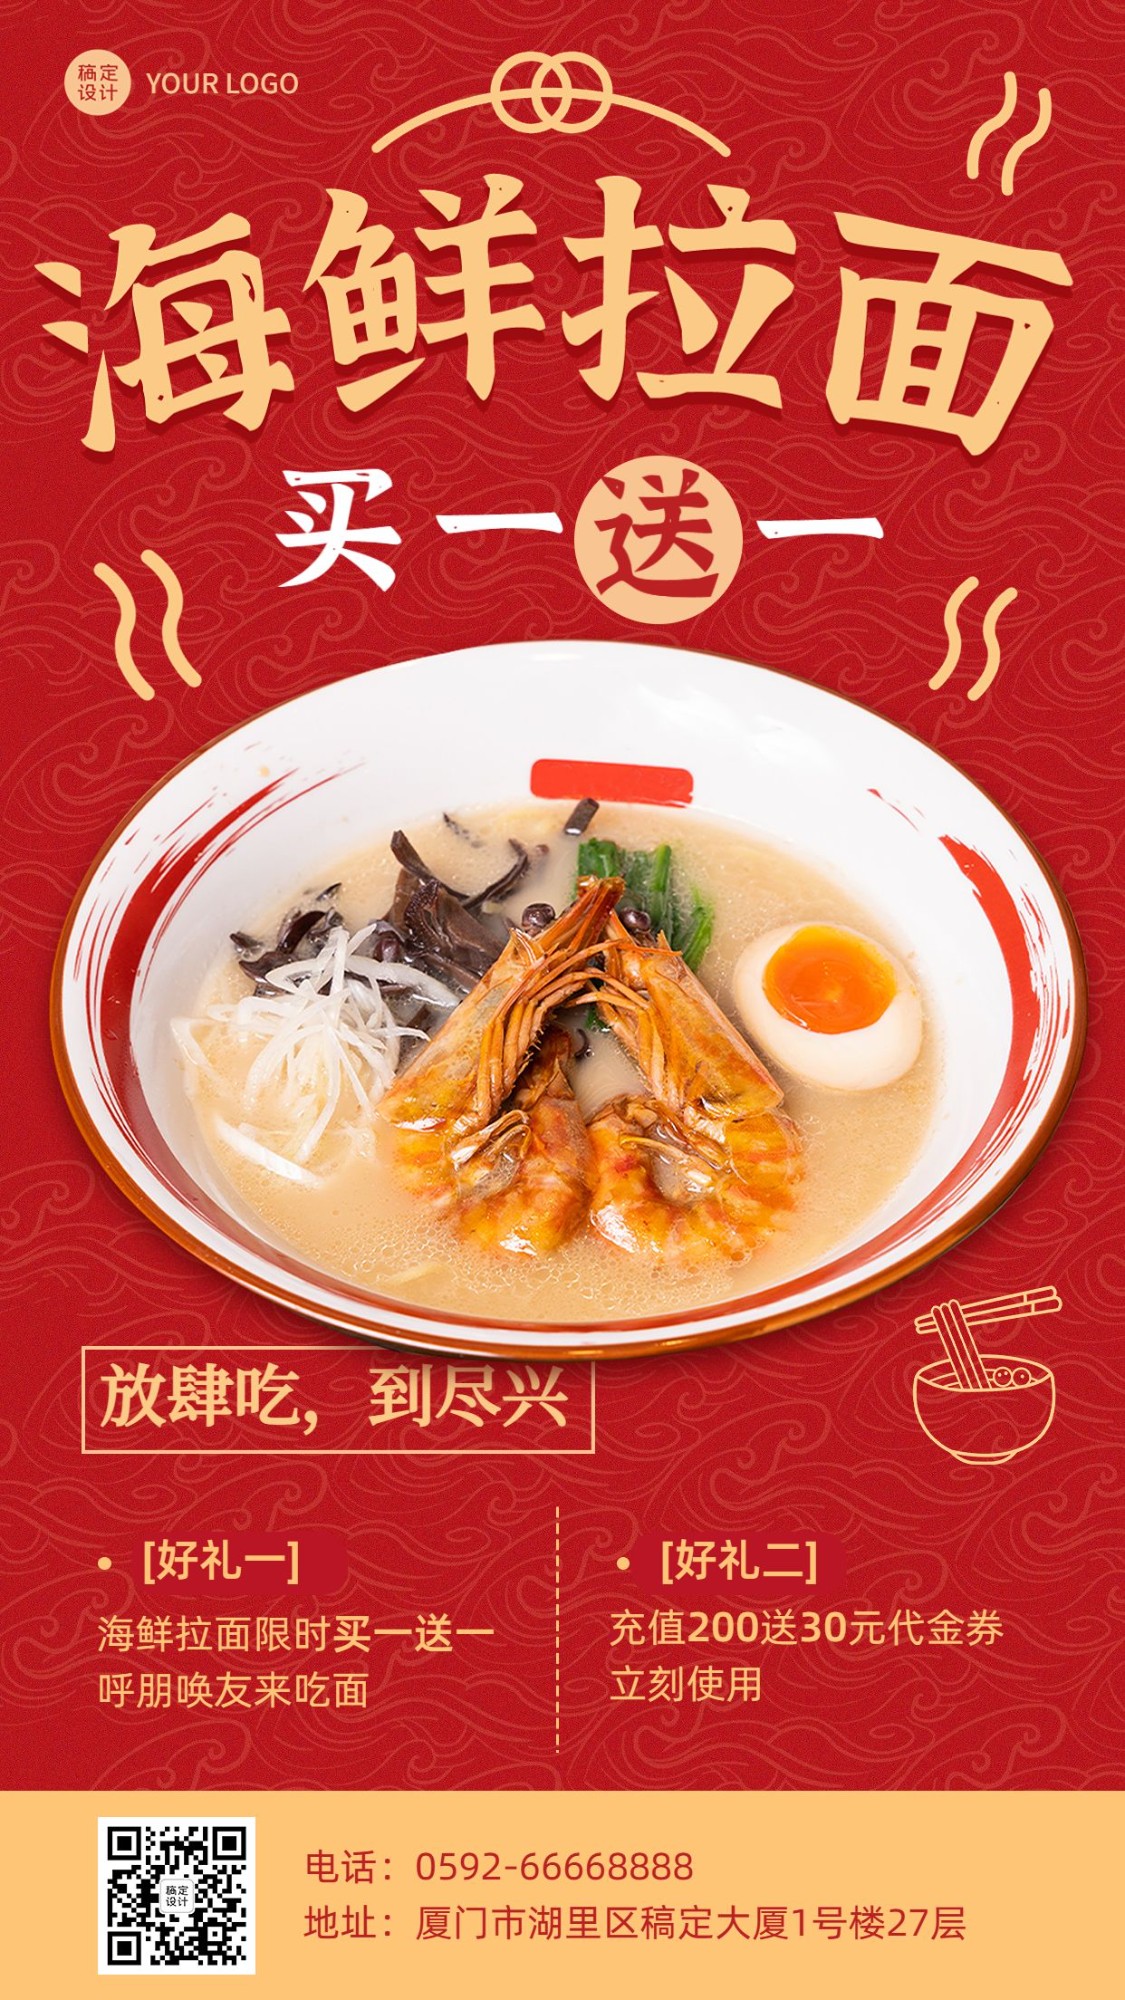 餐饮料理海鲜拉面产品营销手机海报预览效果